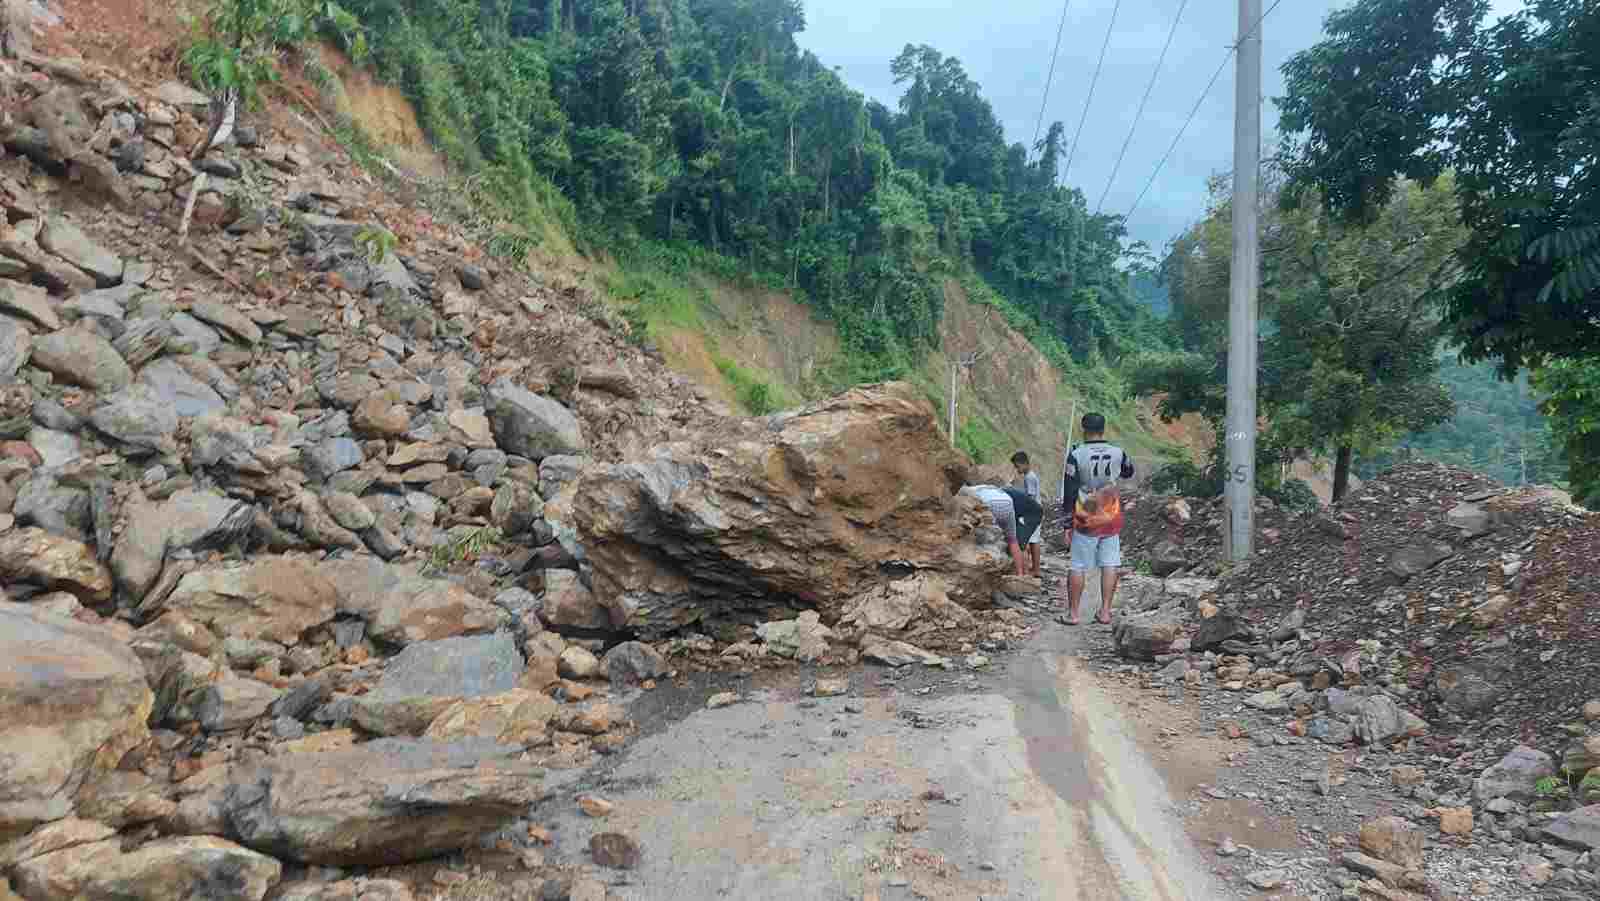 Pemprov Sulsel Bersama Masyarakat Sigap Tangani Longsor di Poros Jalan Batusitanduk - Rantepao di Luwu